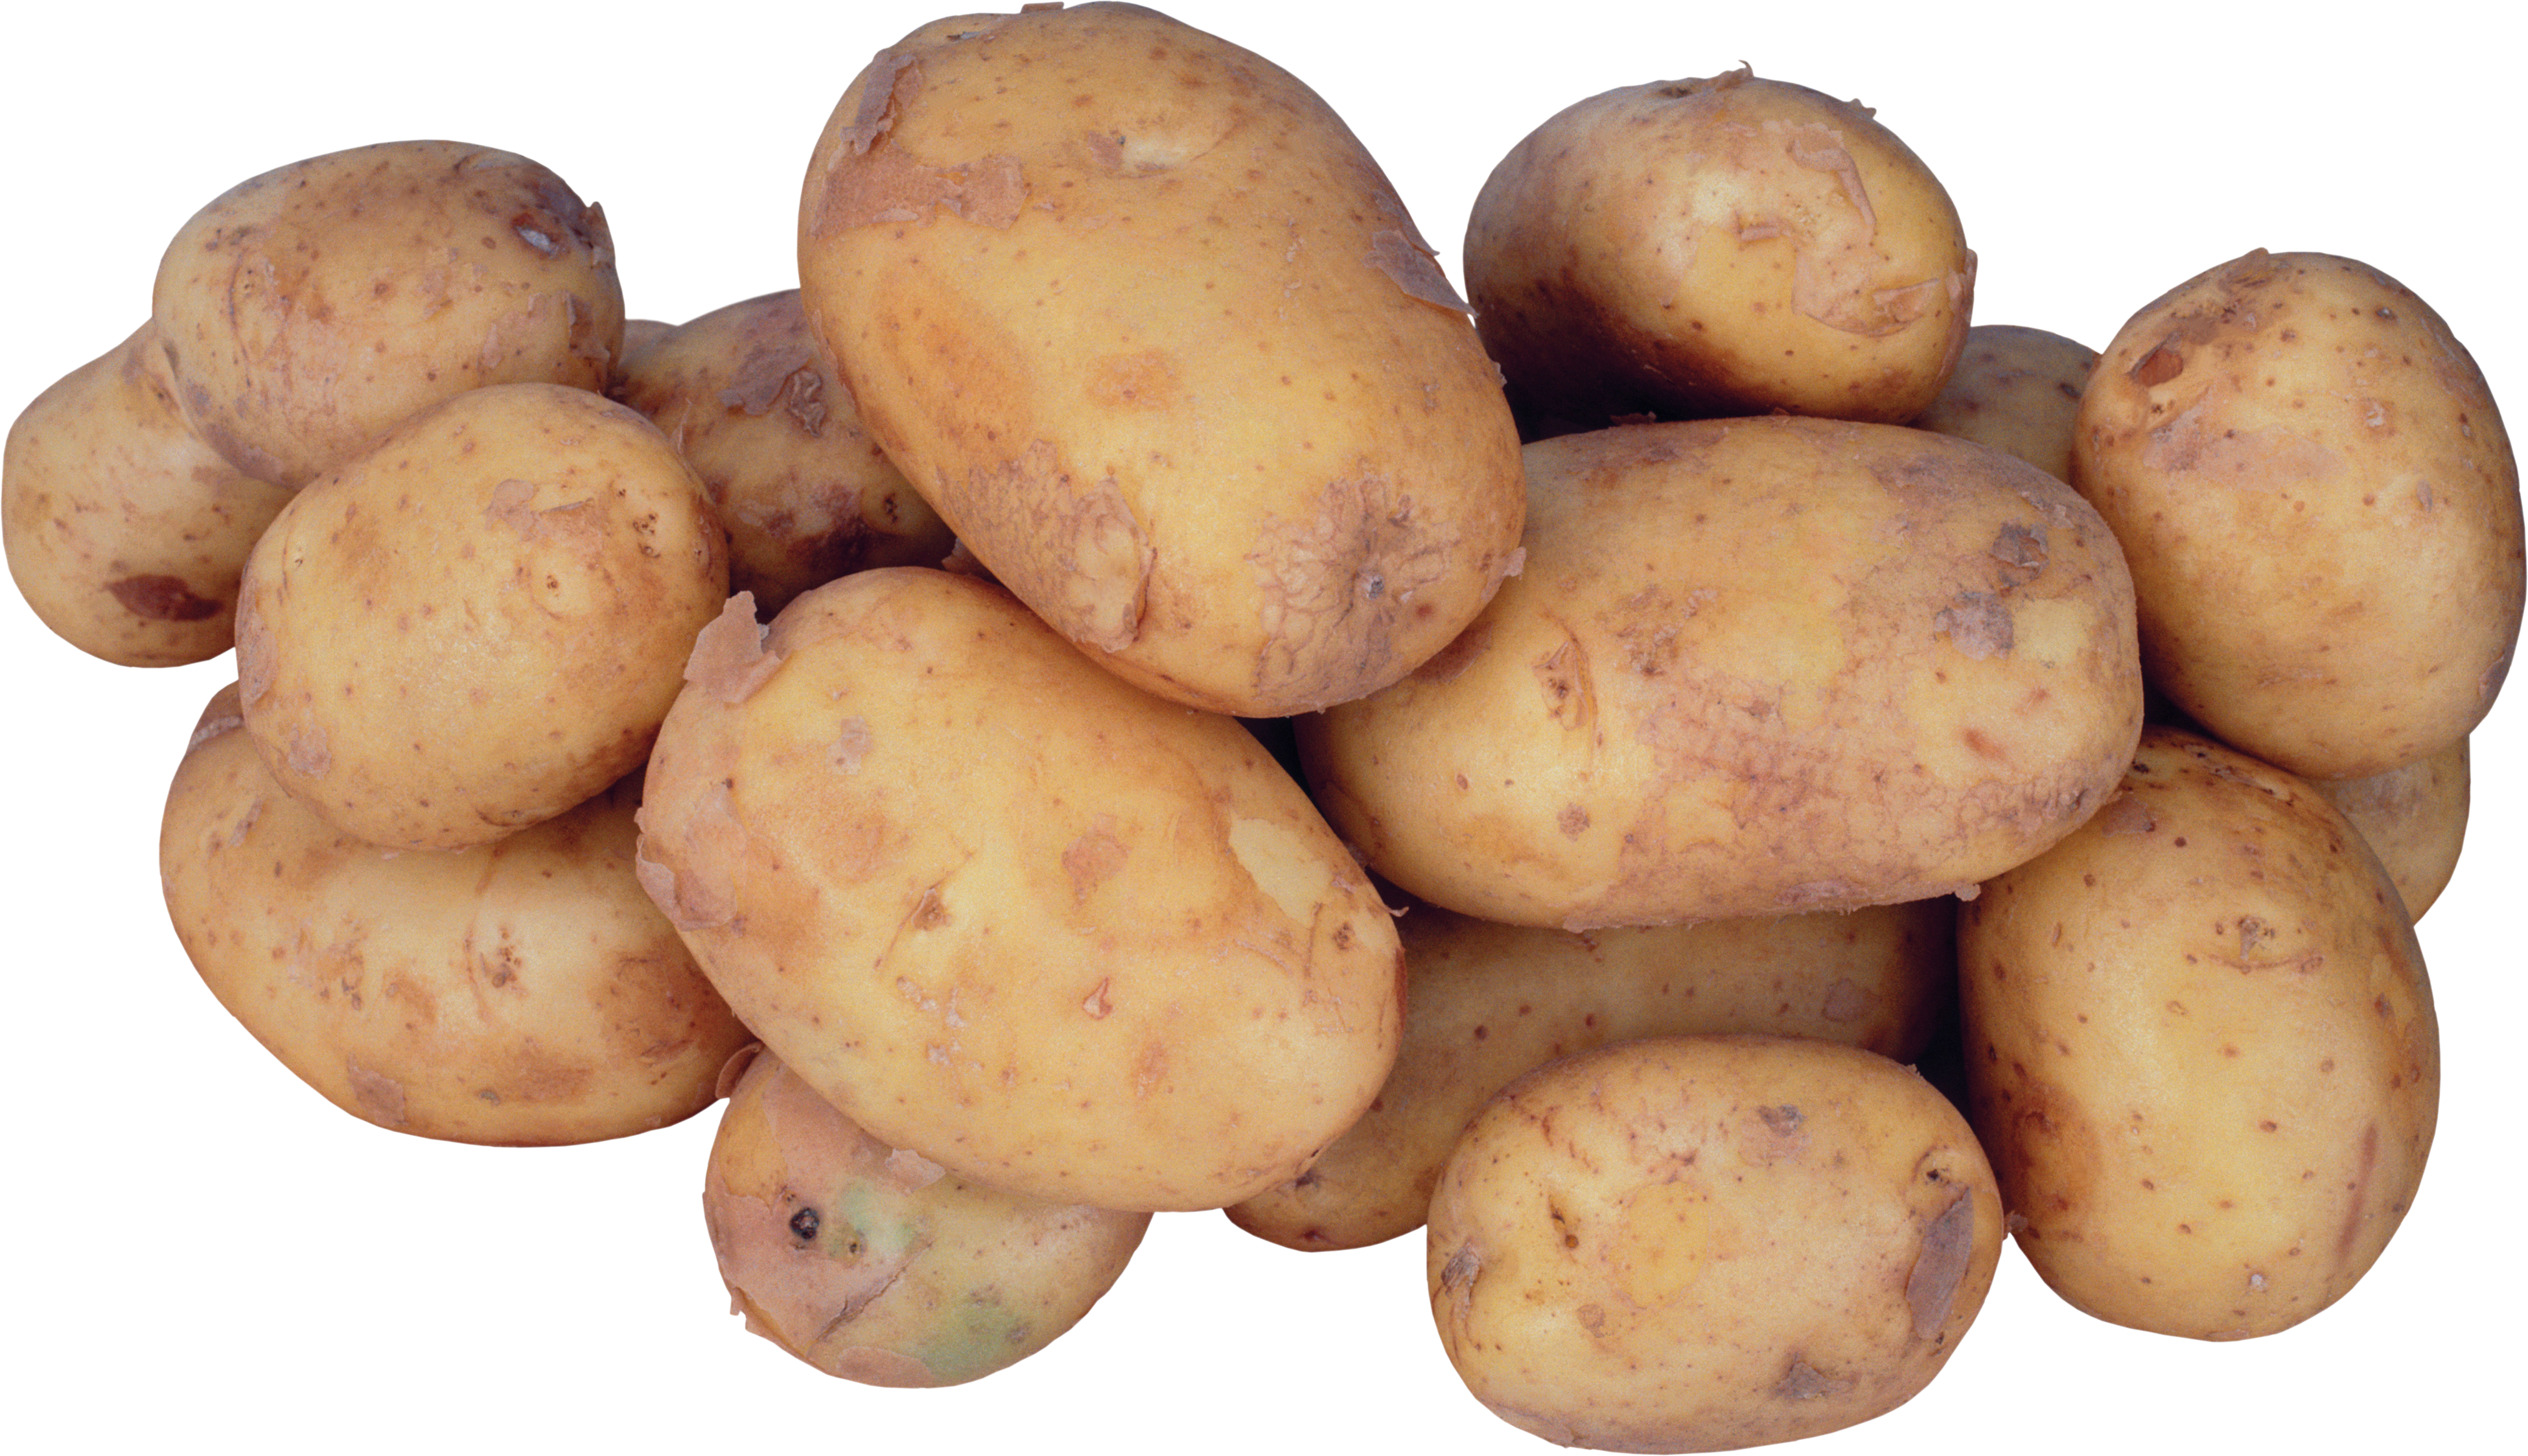 Wiele ziemniaków